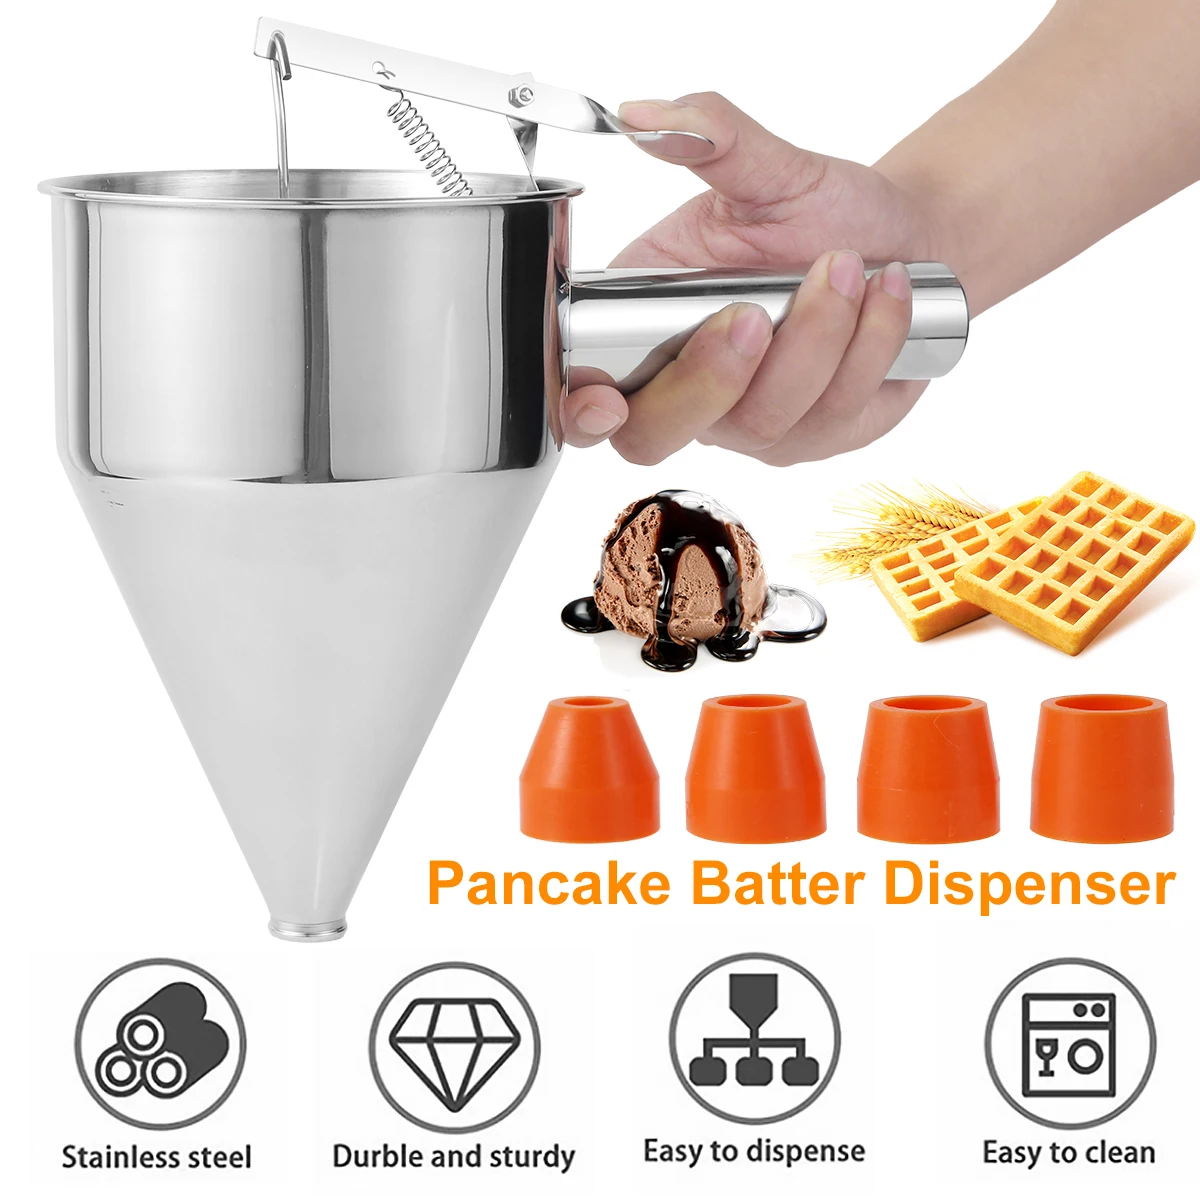 https://ae01.alicdn.com/kf/S490a46bb479c43648c19e559831ef7edg/Pancake-Batter-Dispenser-Funnel-Cake-Dispenser-Stainless-Steel-Batter-Dispenser-Multi-Caliber-Baking-Tool-Cake-Decorating.jpg